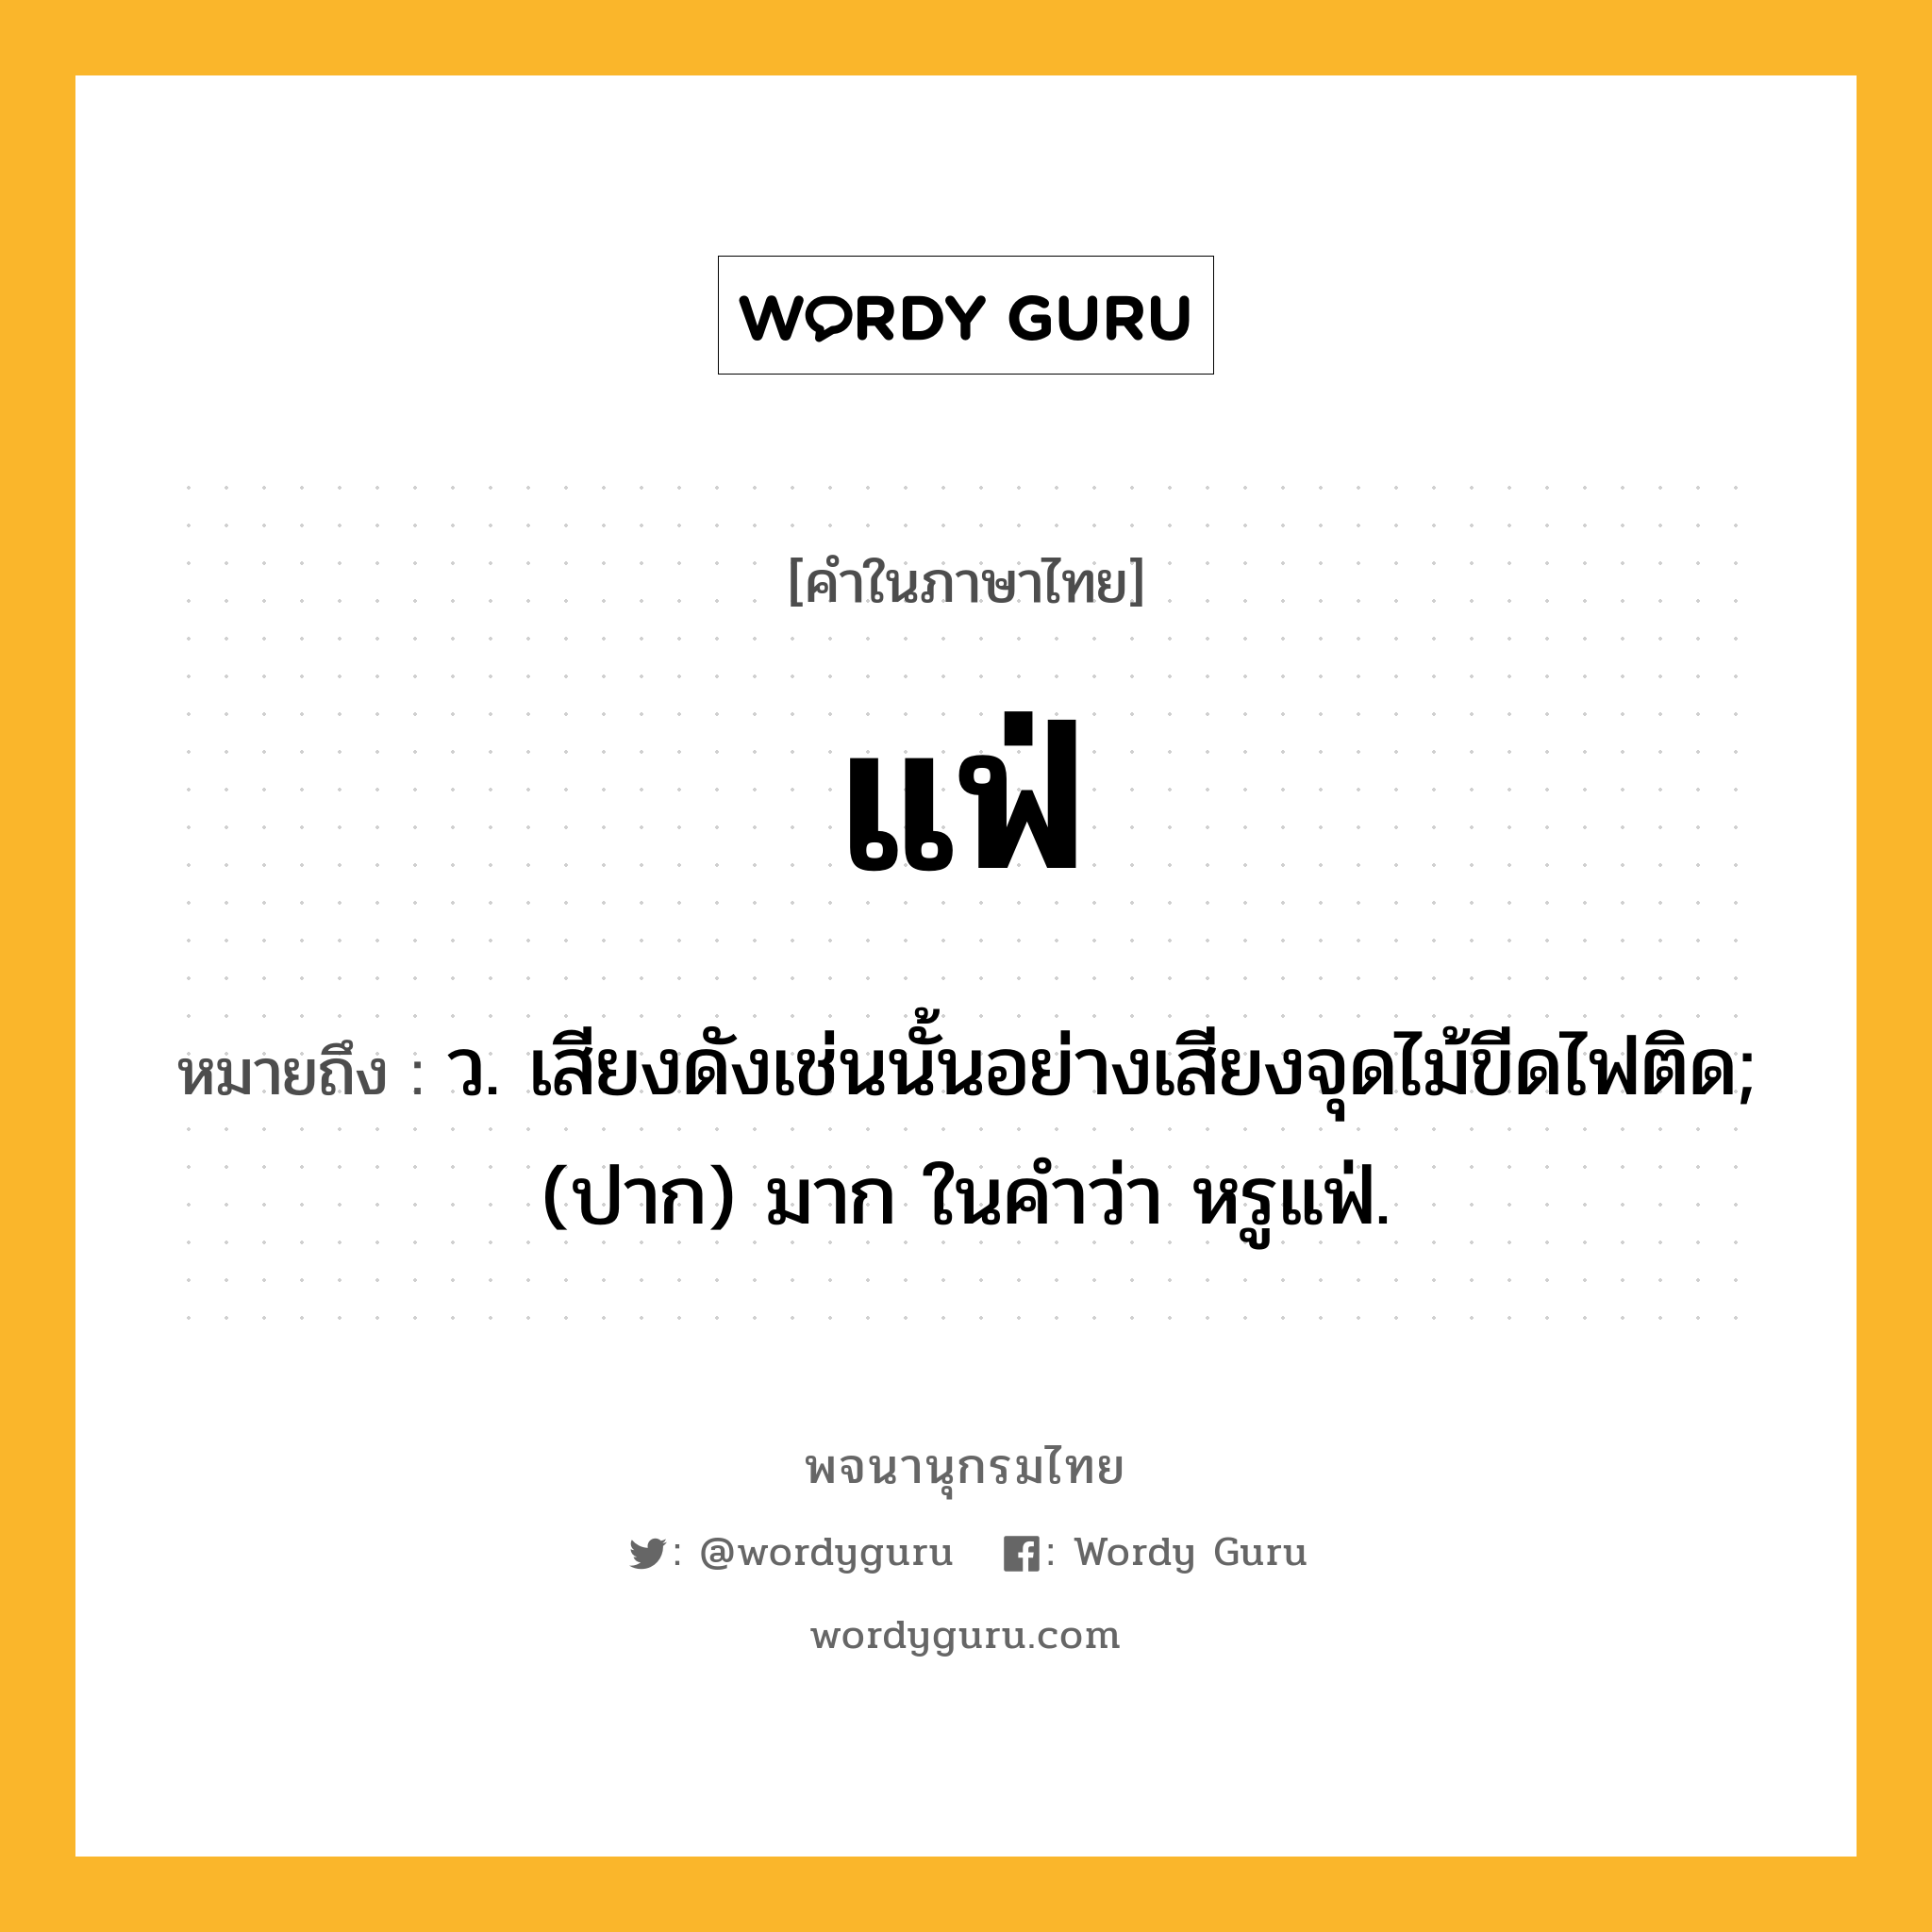 แฟ่ ความหมาย หมายถึงอะไร?, คำในภาษาไทย แฟ่ หมายถึง ว. เสียงดังเช่นนั้นอย่างเสียงจุดไม้ขีดไฟติด; (ปาก) มาก ในคำว่า หรูแฟ่.